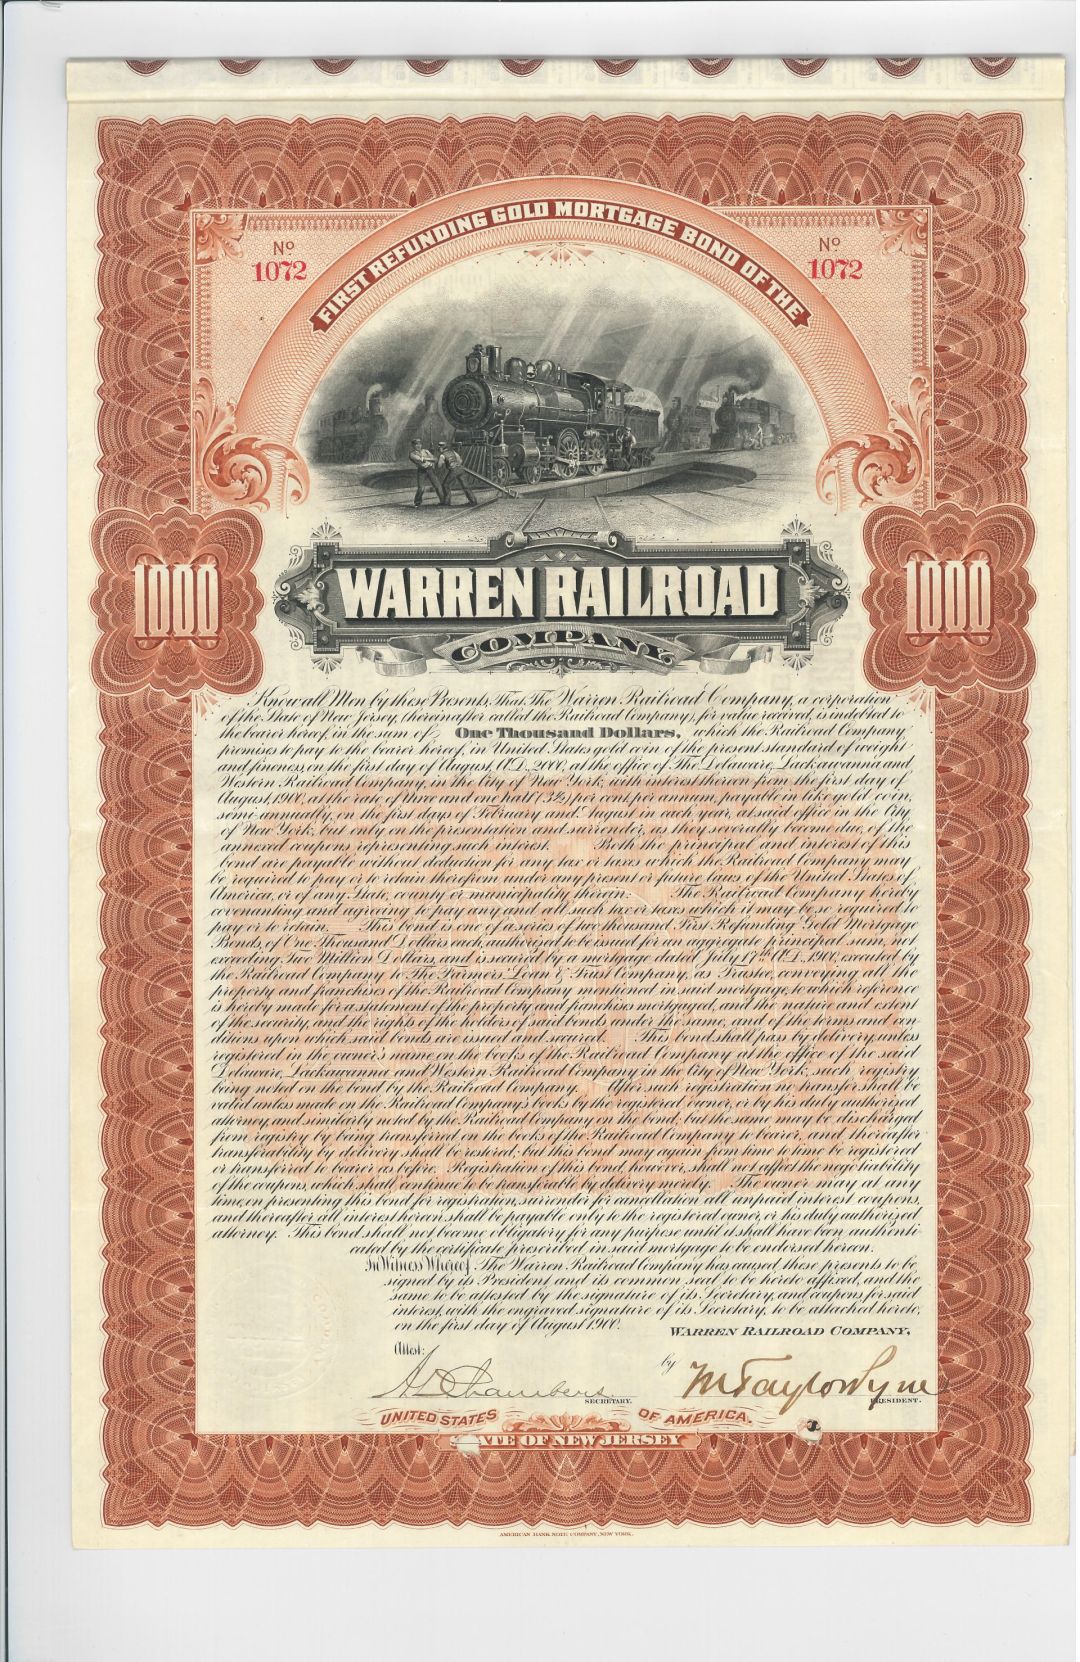 Warren Railroad Co. - dated 1900 $1,000 New Jersey Railway Bond